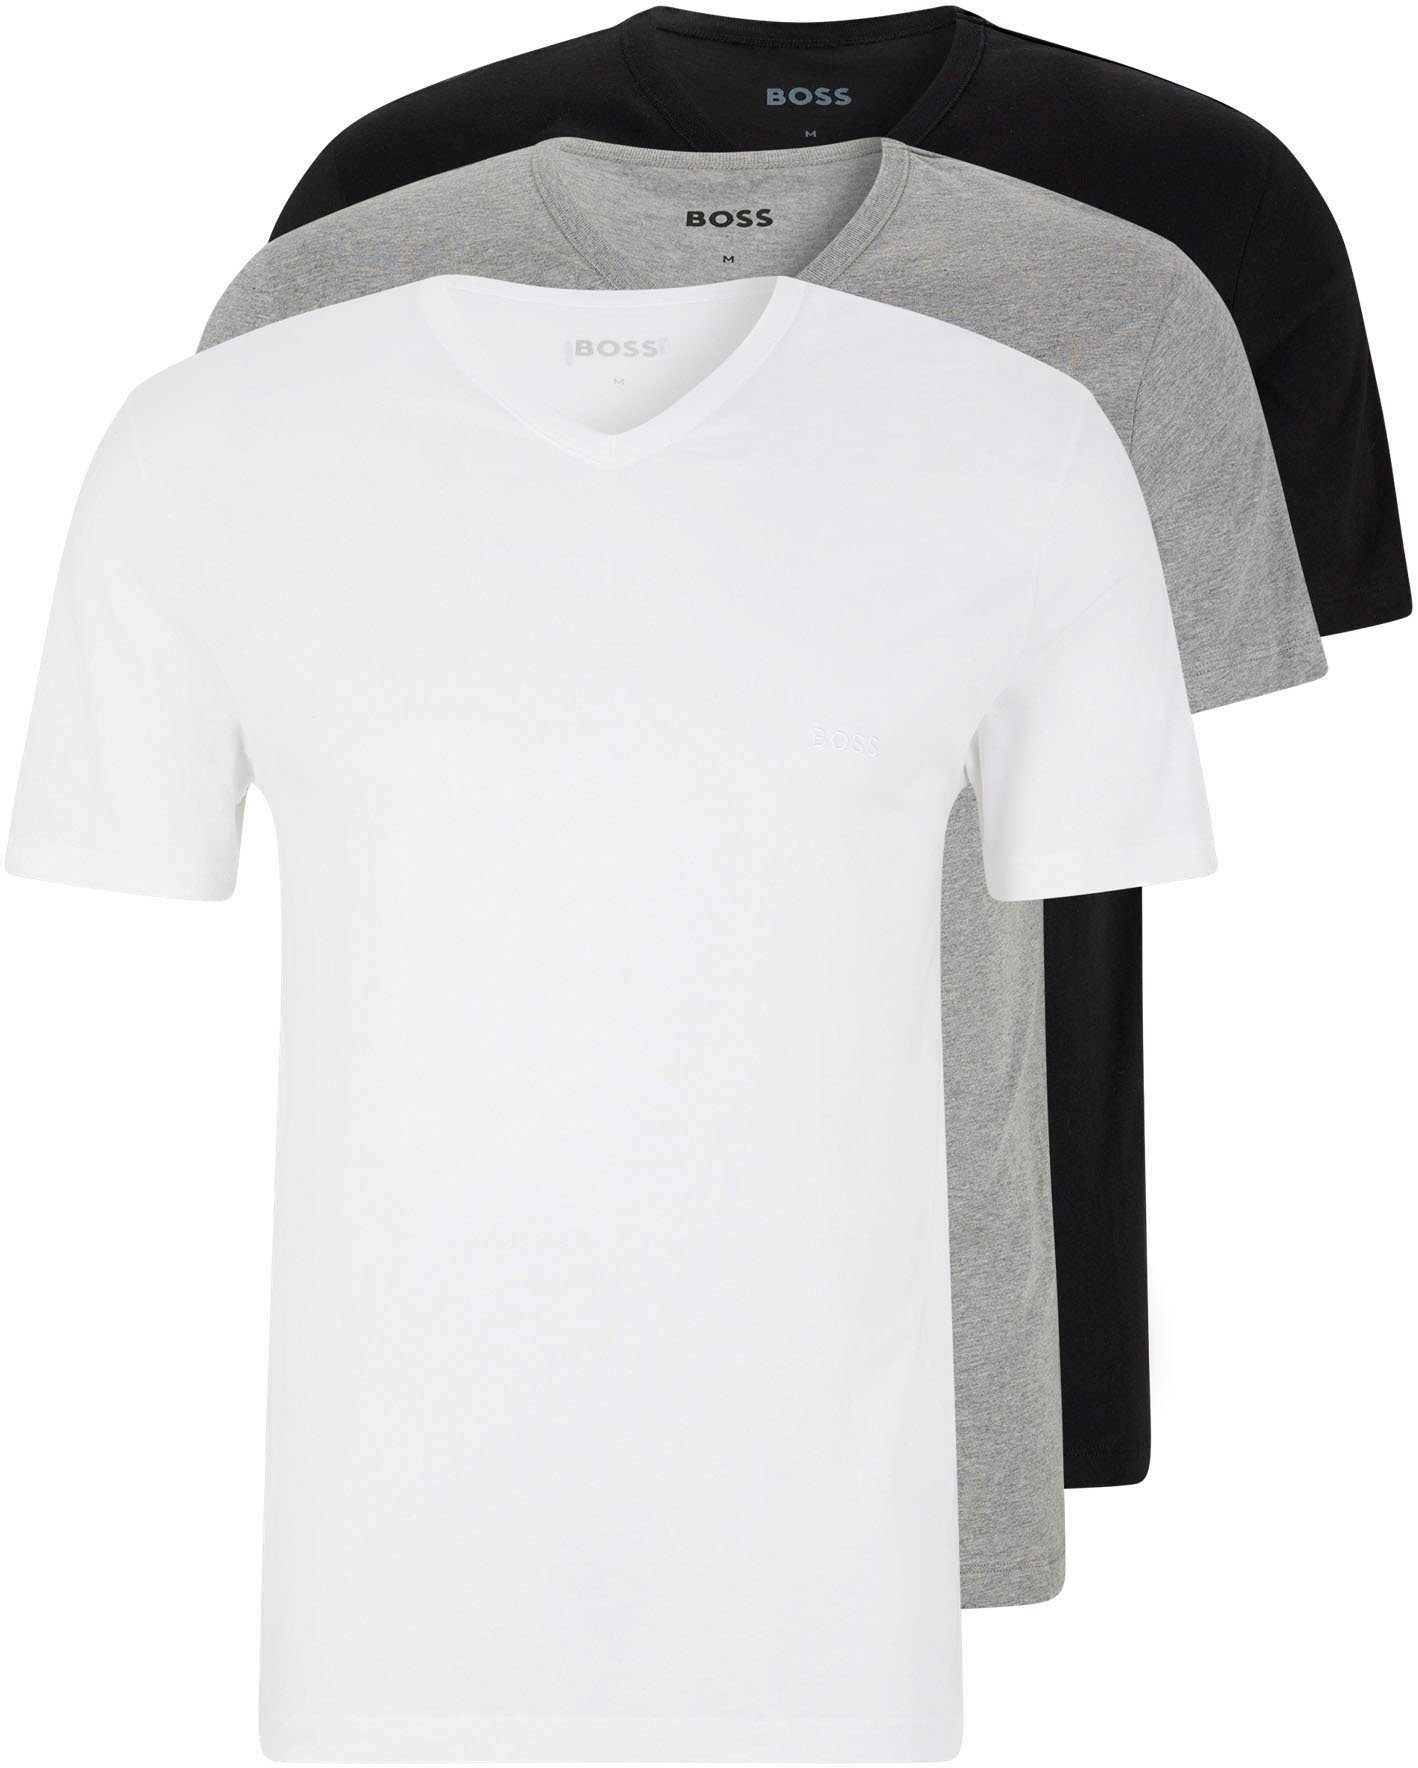 HUGO BOSS V-Shirt T-Shirt VN 3P CO (Packung) assorted pre-pack, grau-meliert, schwarz